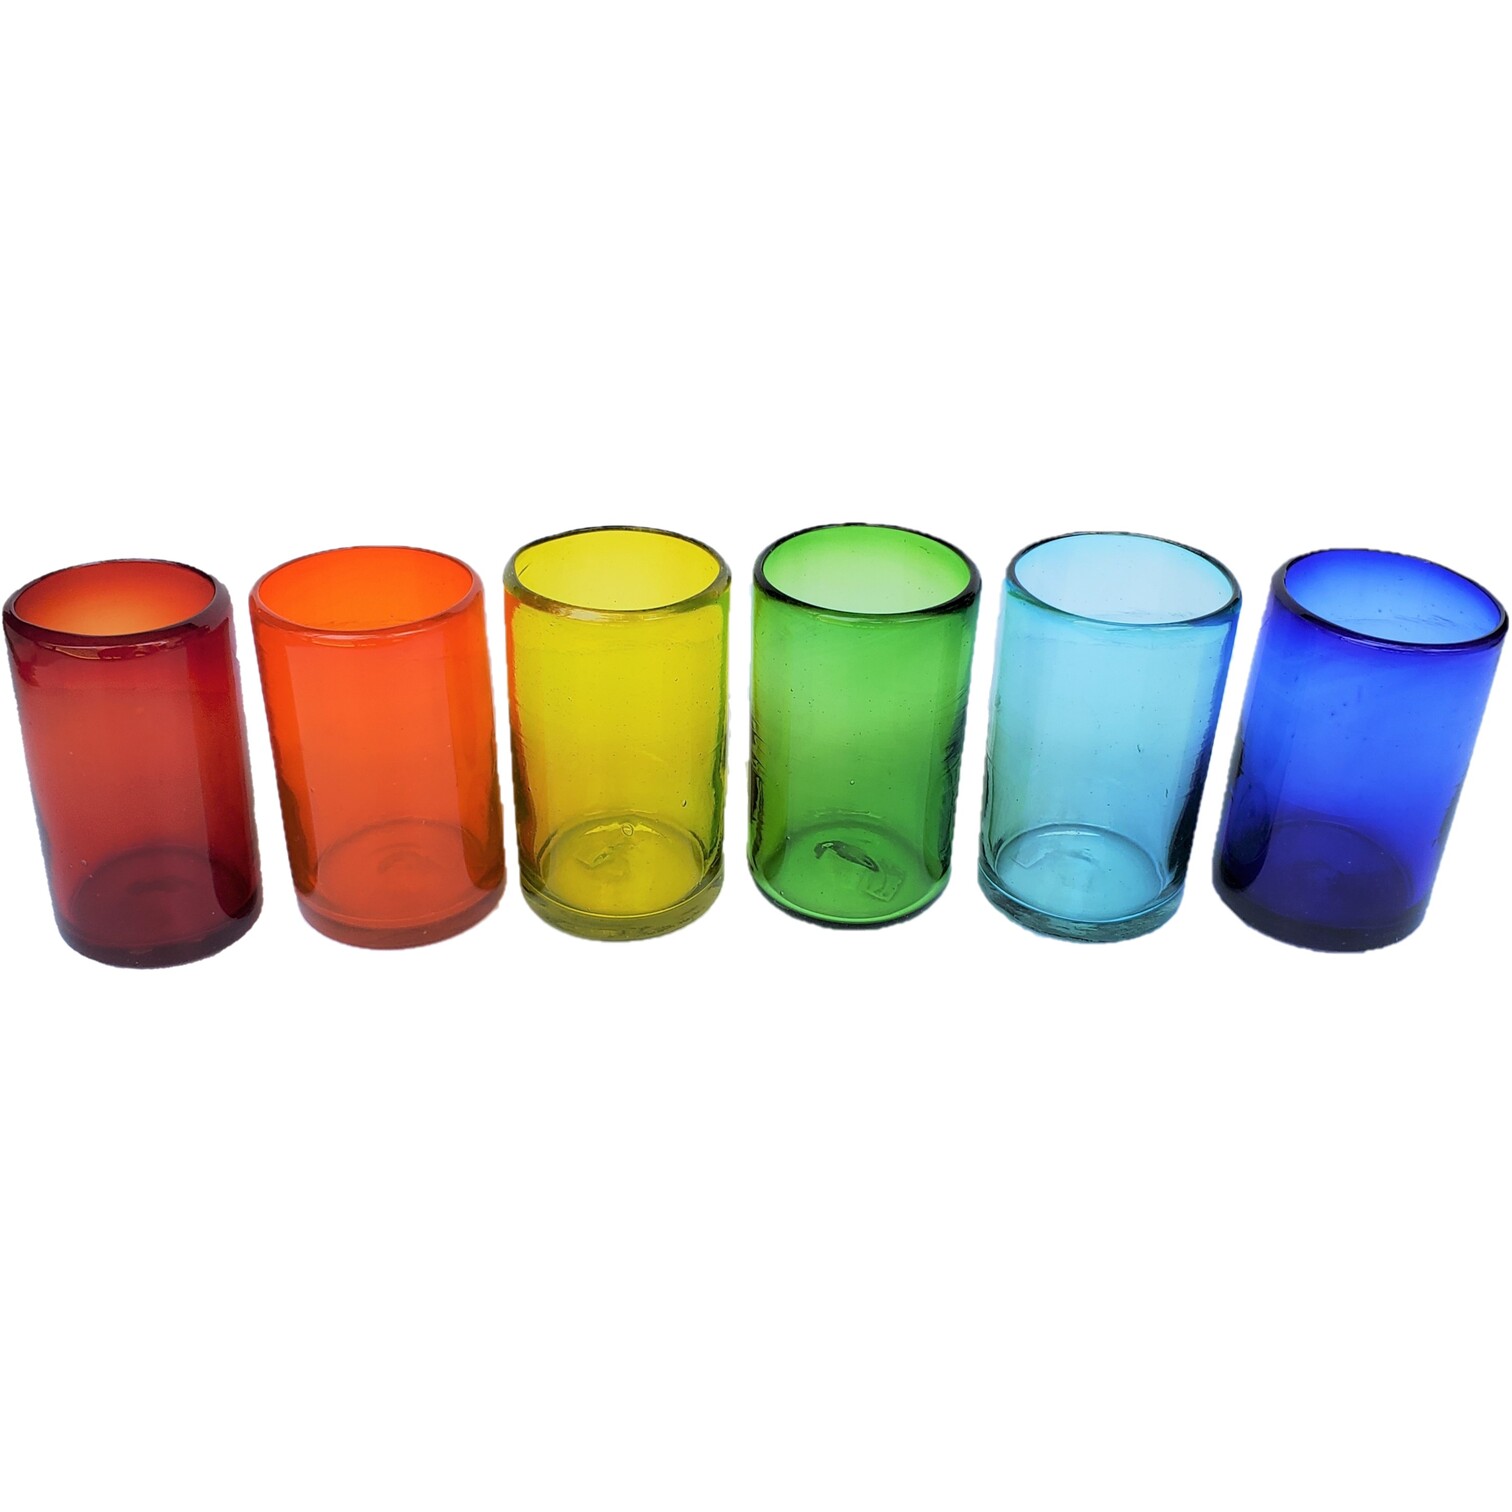 VIDRIO SOPLADO / vasos grandes de colores Arco�ris